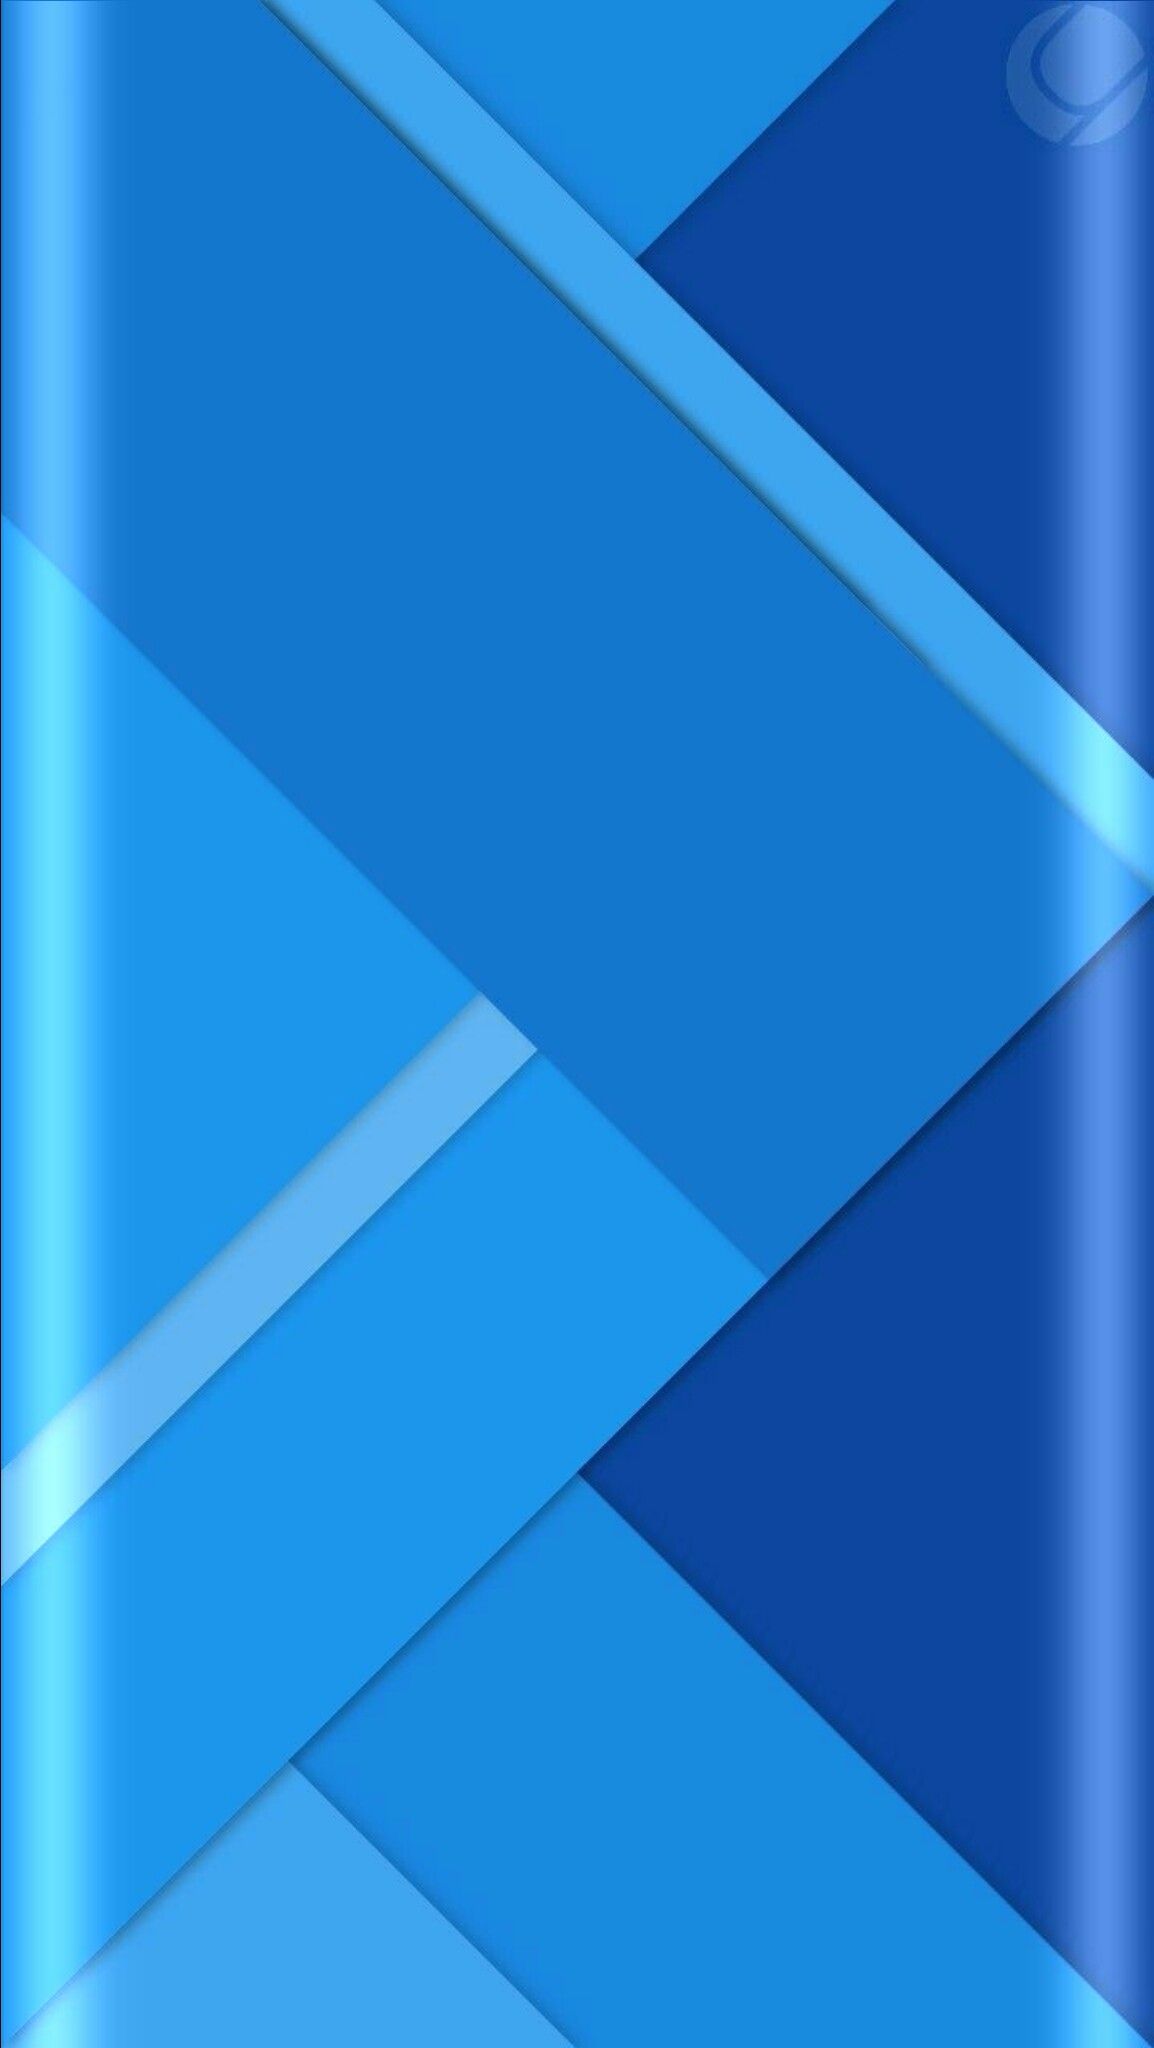 aplicativo de壁紙,青い,コバルトブルー,エレクトリックブルー,アクア,ライン